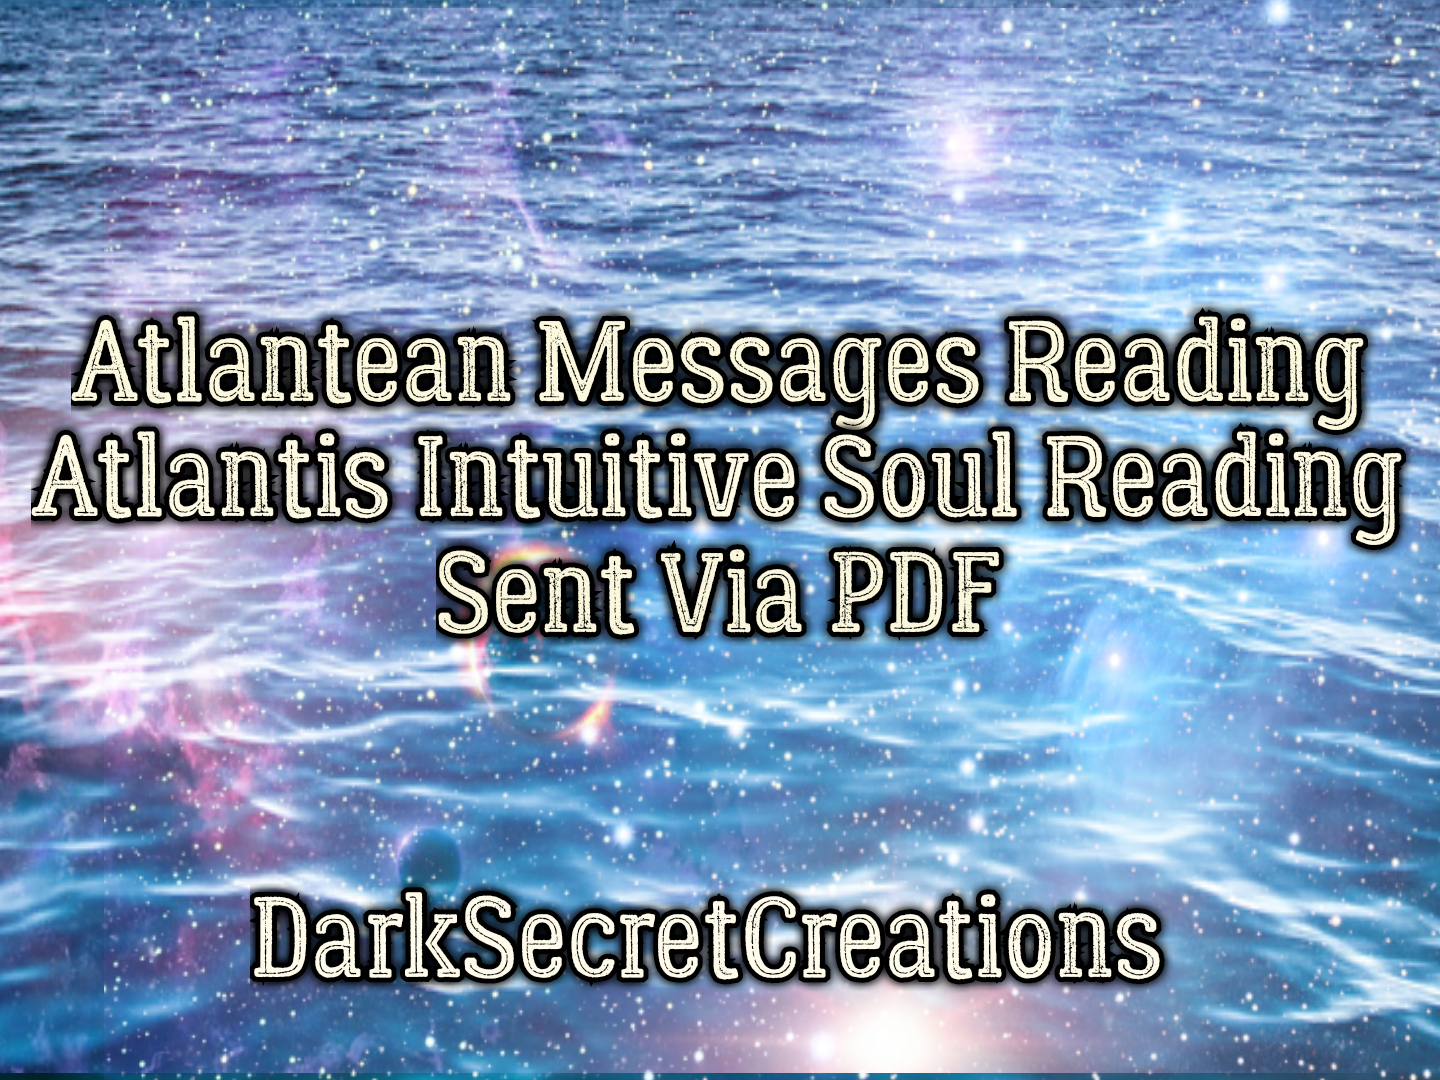 Atlantean Messages, Atlantis Intuitive Soul Reading, Sent Via PDF - $30.00